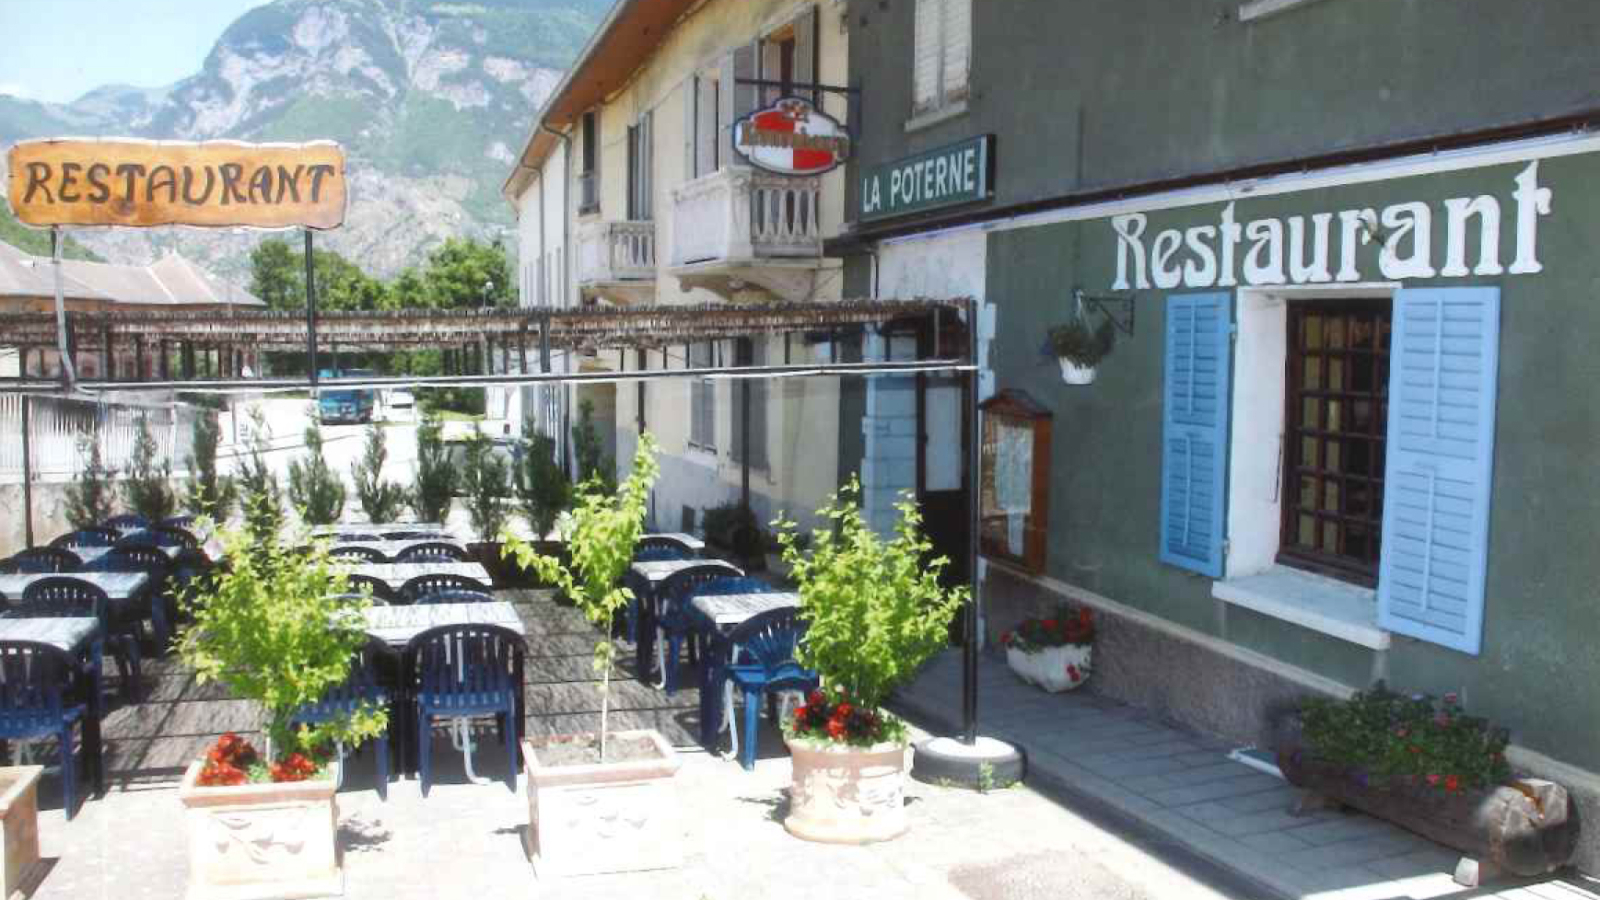 Restaurant La Poterne - Saint-Jean-de-Maurienne